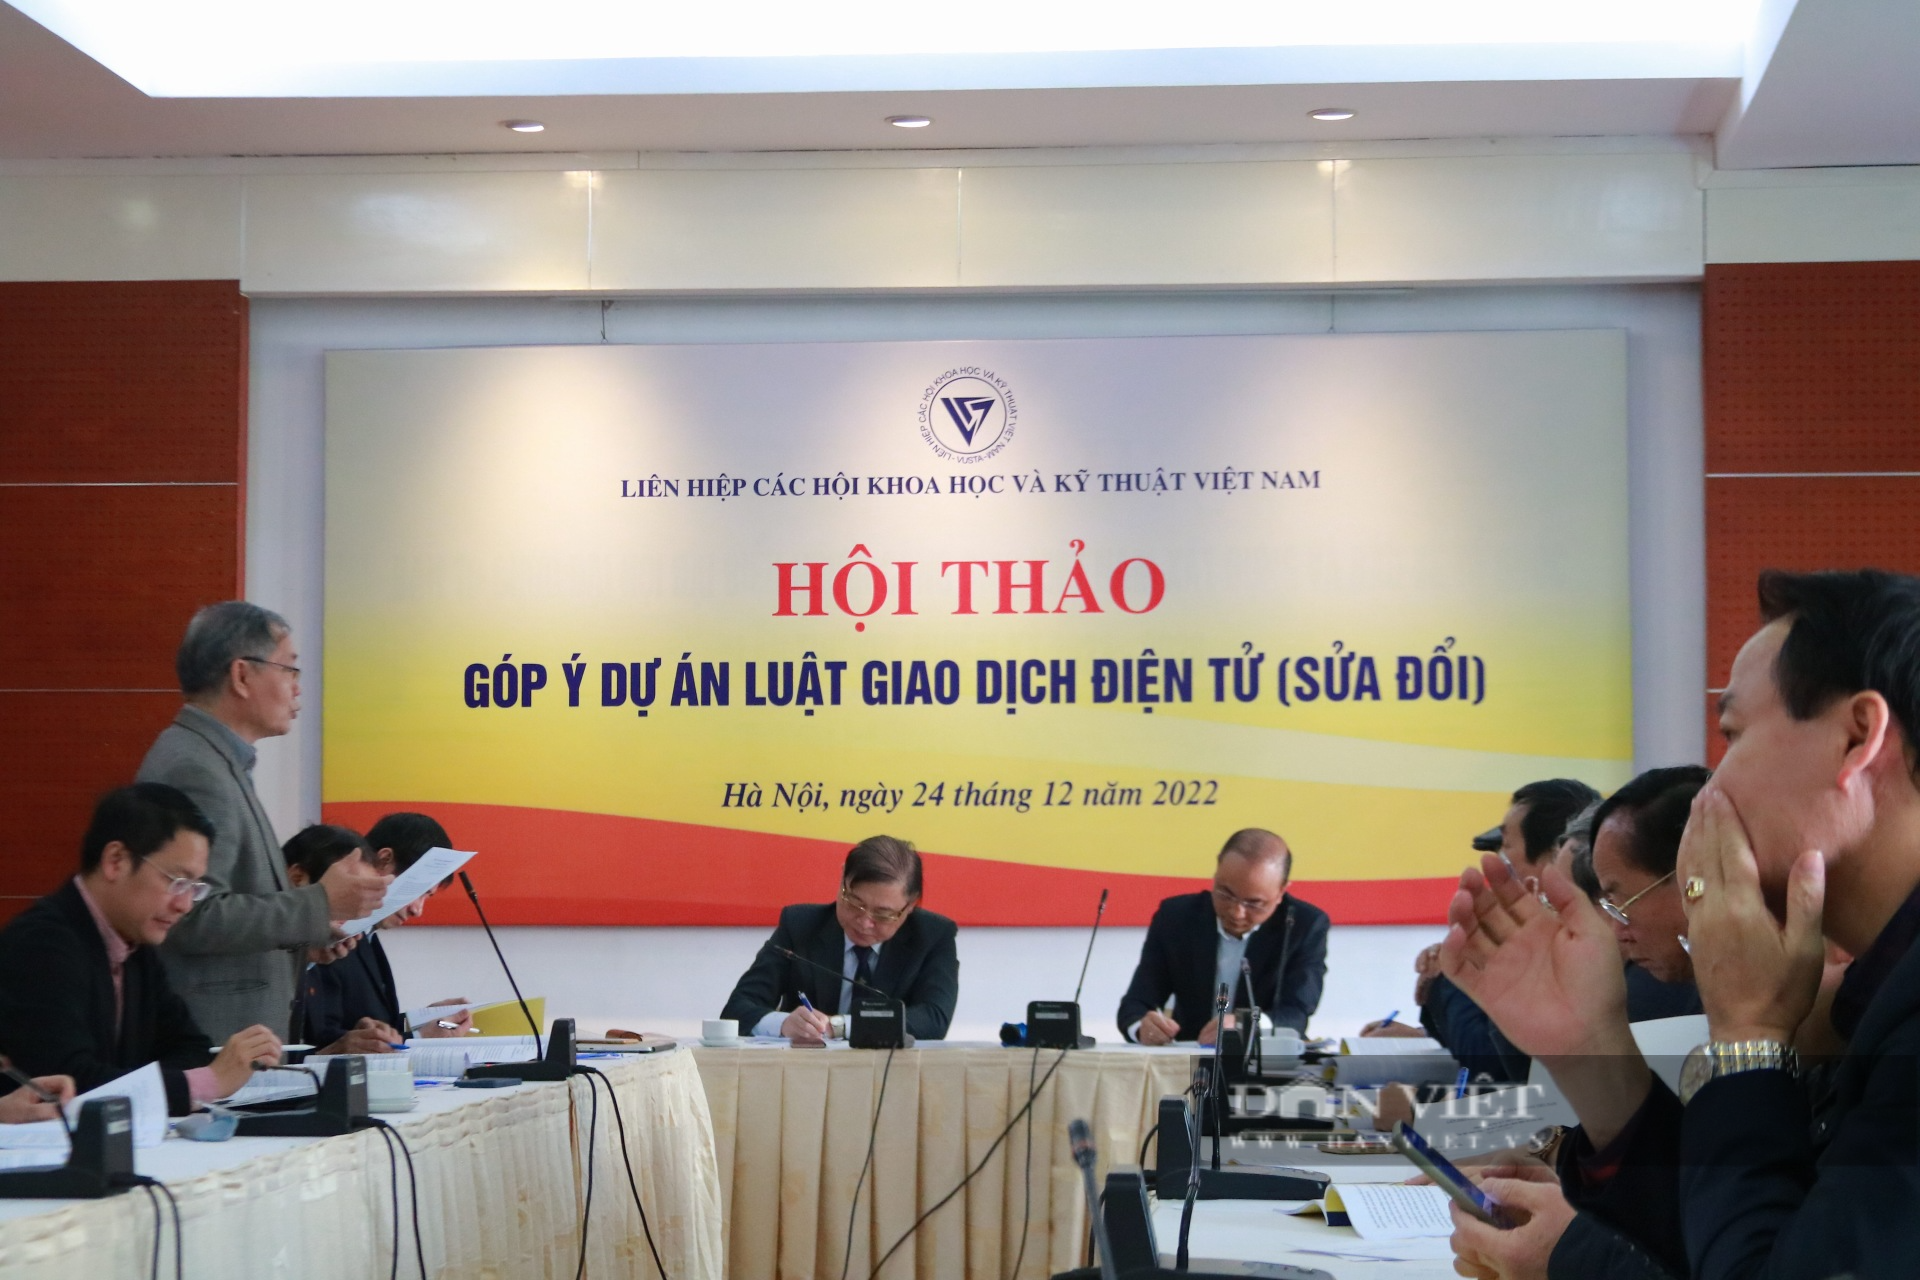 Liên hiệp các Hội khoa học và Kỹ thuật Việt Nam trình Quốc hội dự án Luật giao dịch điện tử sửa đổi - Ảnh 1.